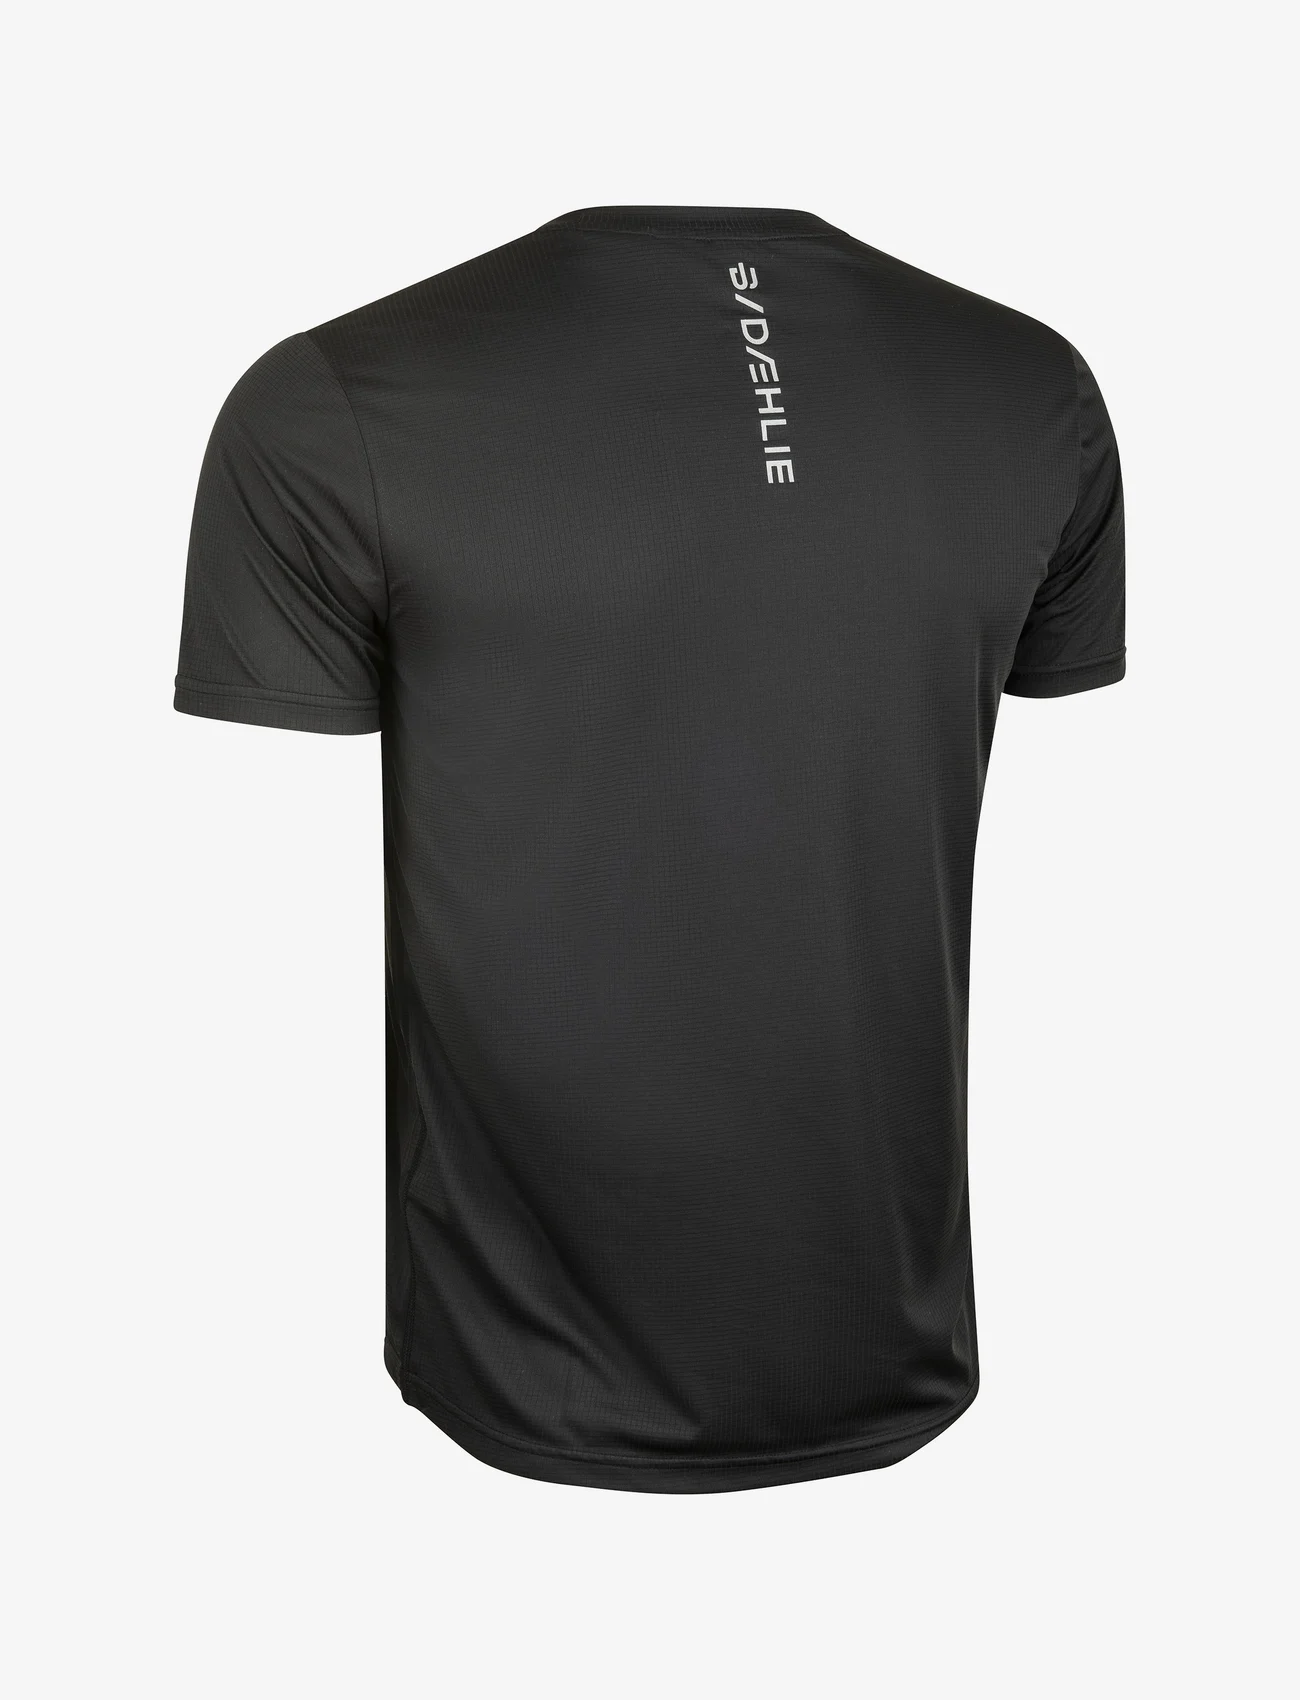 Daehlie - T-Shirt Primary - laisvalaikio marškinėliai - black - 1